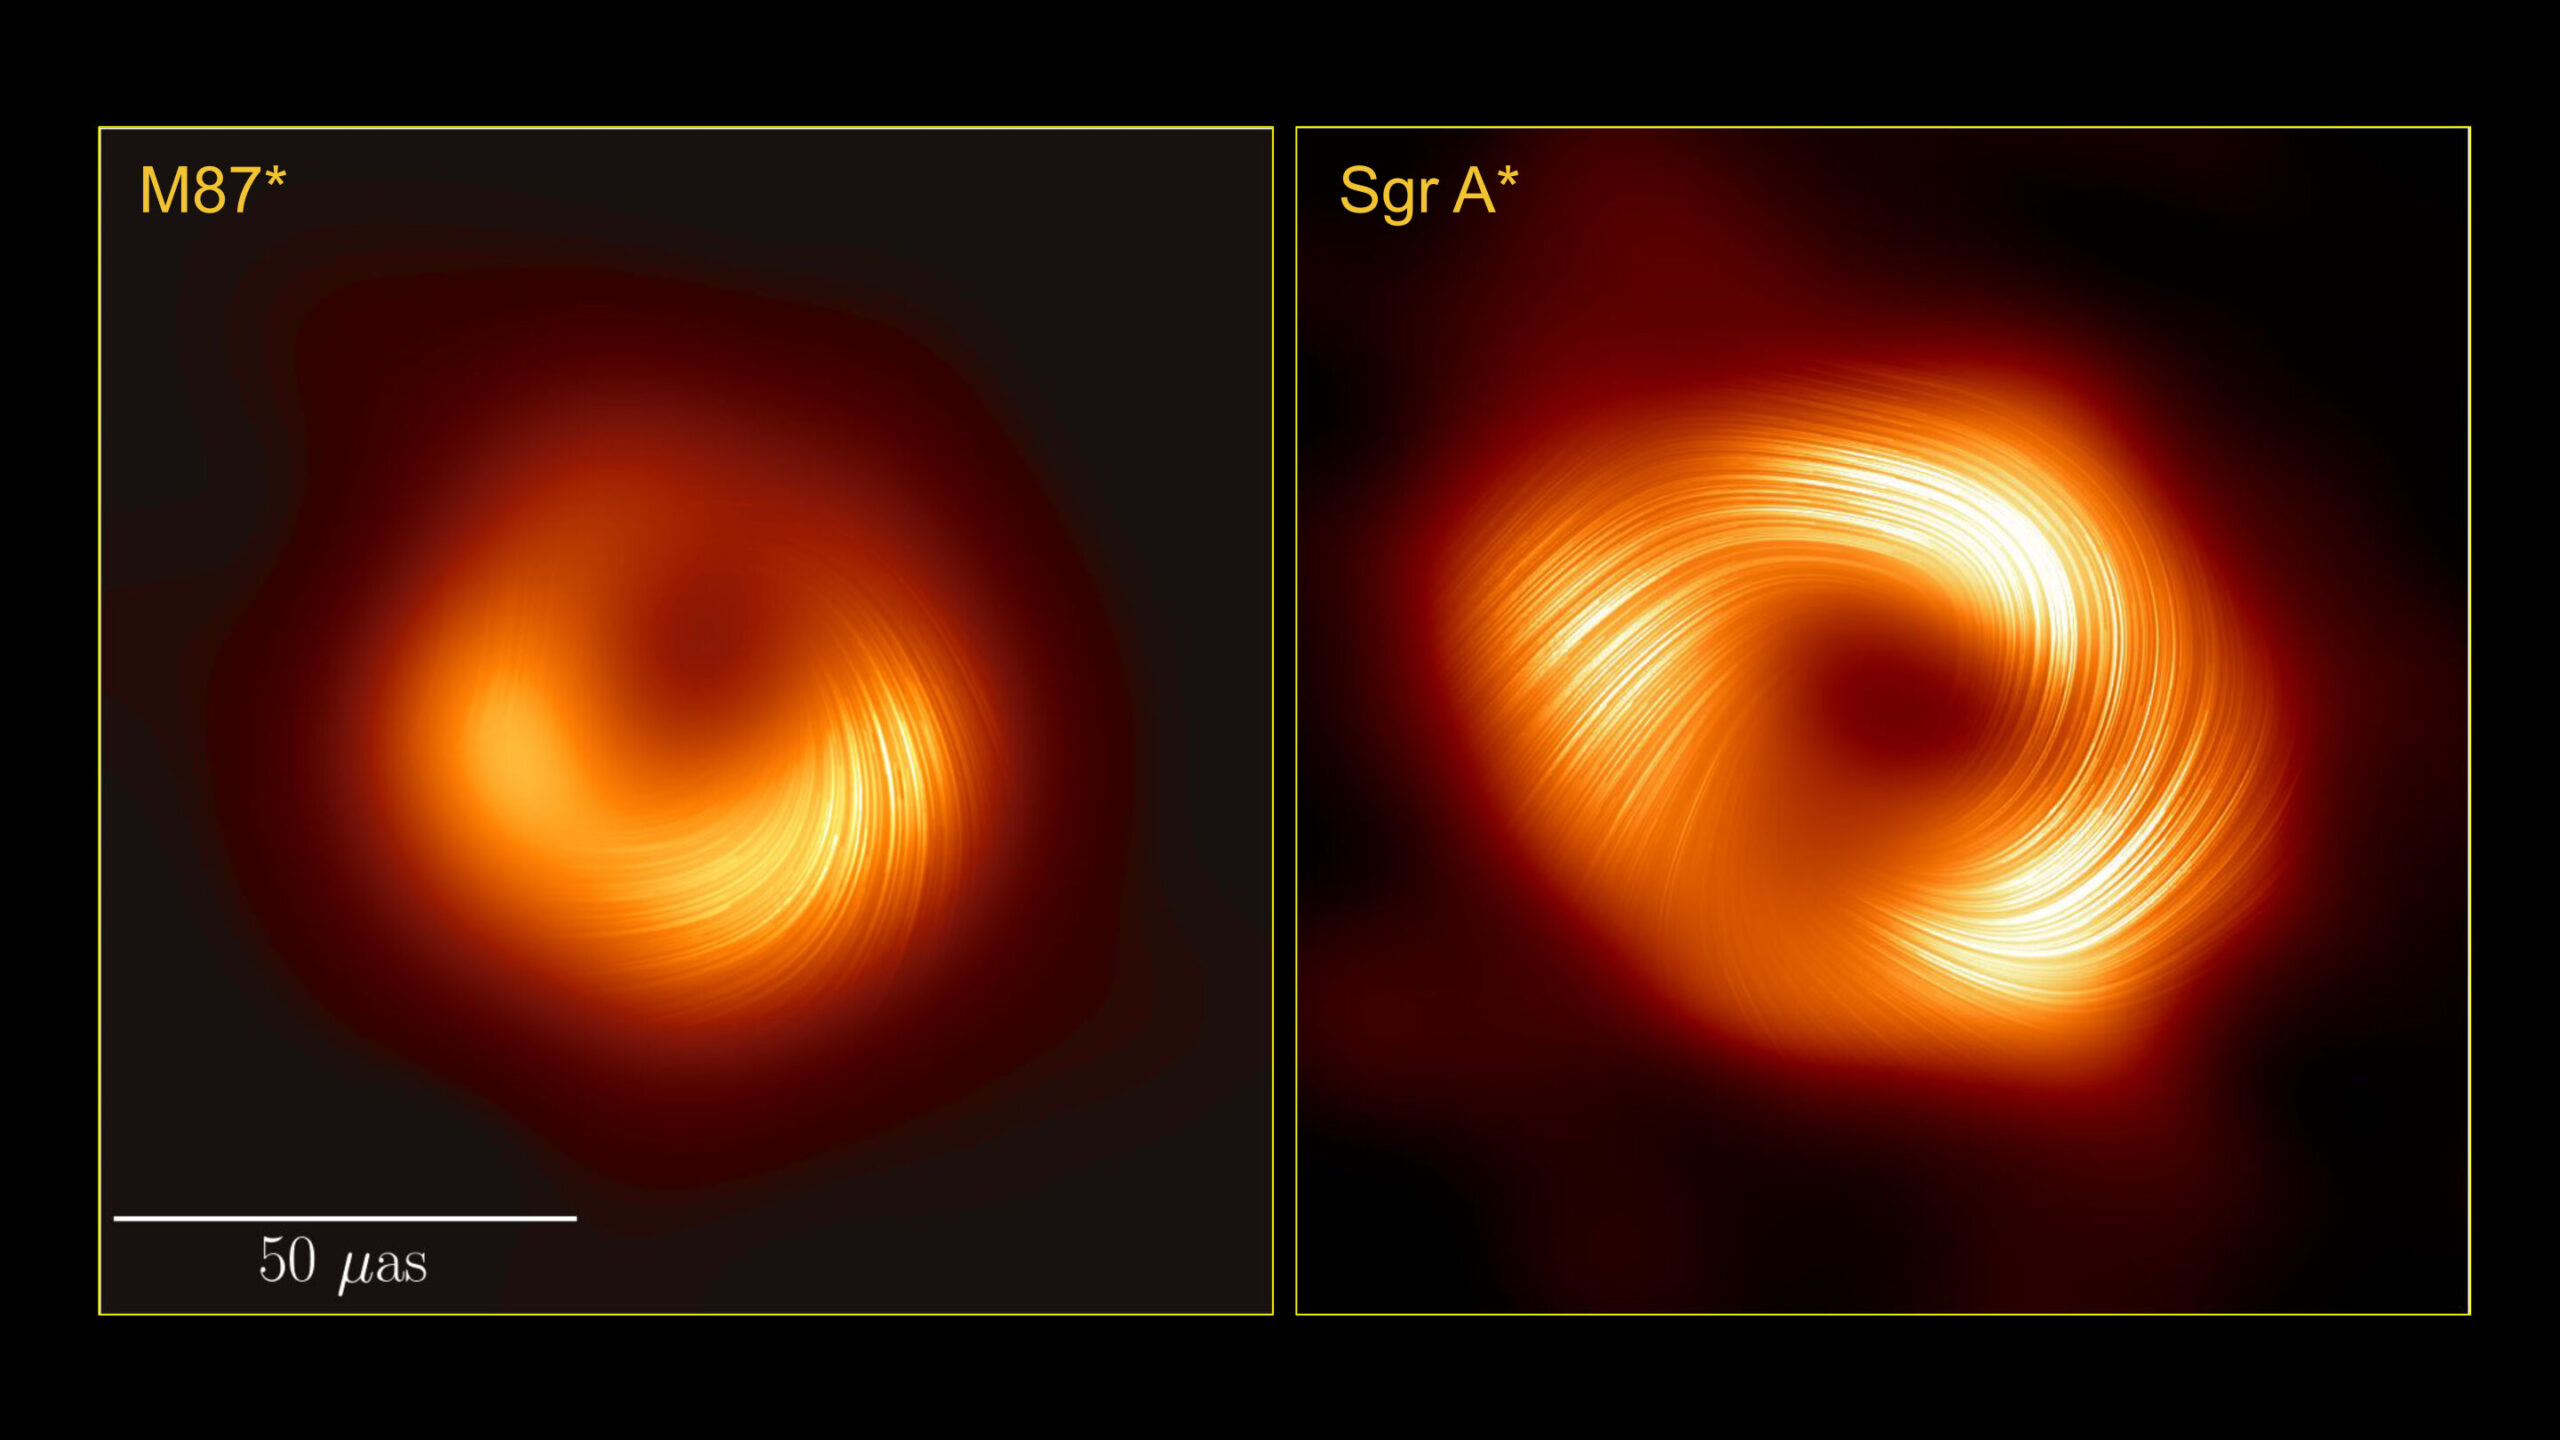 Na ovoj usporedbi, prikazanoj u polariziranoj svjetlosti, supermasivne crne rupe M87* i Sagittarius A* otkrivaju sličnosti u strukturi svojih magnetskih polja, što znanstvenicima pruža ključne uvide. Ovaj nalaz je od iznimne važnosti jer upućuje na mogućnost da su osnovni fizički procesi koji reguliraju apsorpciju materije i lansiranje mlazova od strane crnih rupa zapravo univerzalni među supermasivnim crnim rupama. Zahvaljujući suradnji EHT.